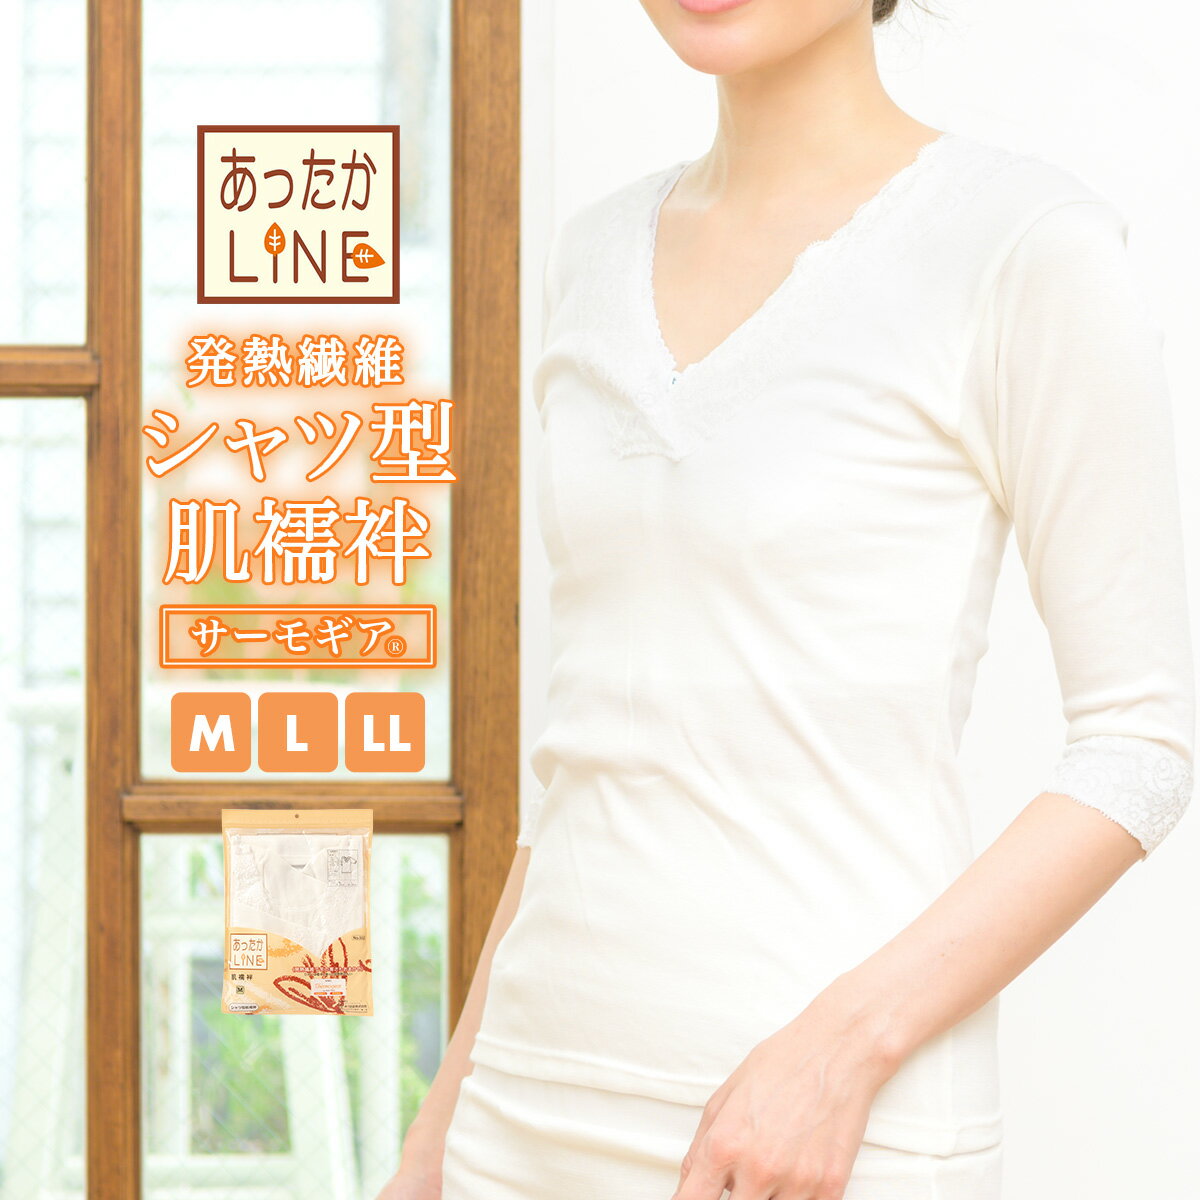 肌襦袢 シャツ型 日本製 肌着 防寒 冬 あったかLINE 白 補正 和装下着 メール便 あす楽対応商品 送料無料